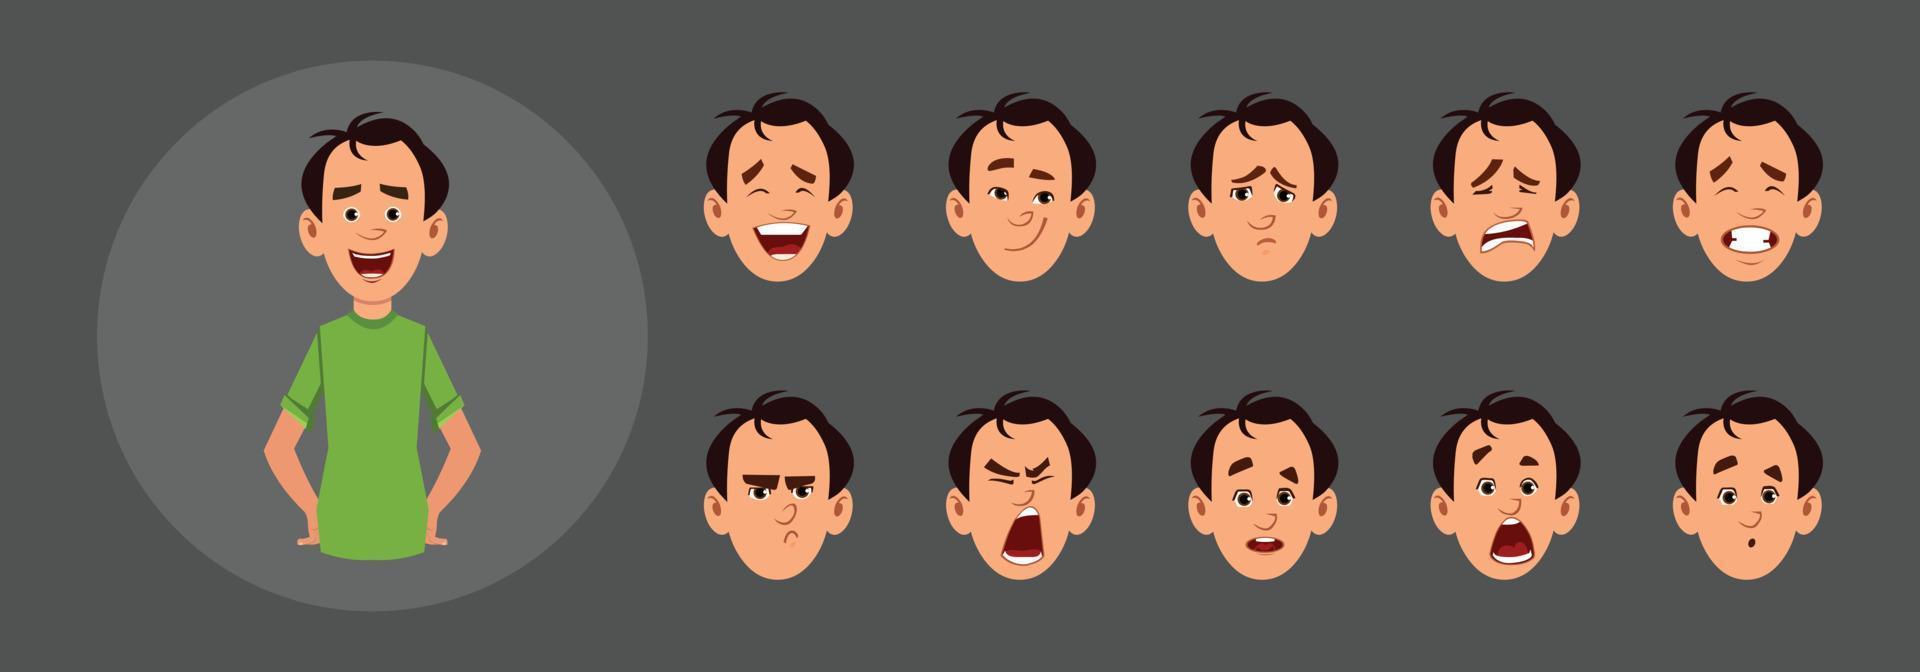 Menschen mit unterschiedlichen Gesichtsgefühlen vektor